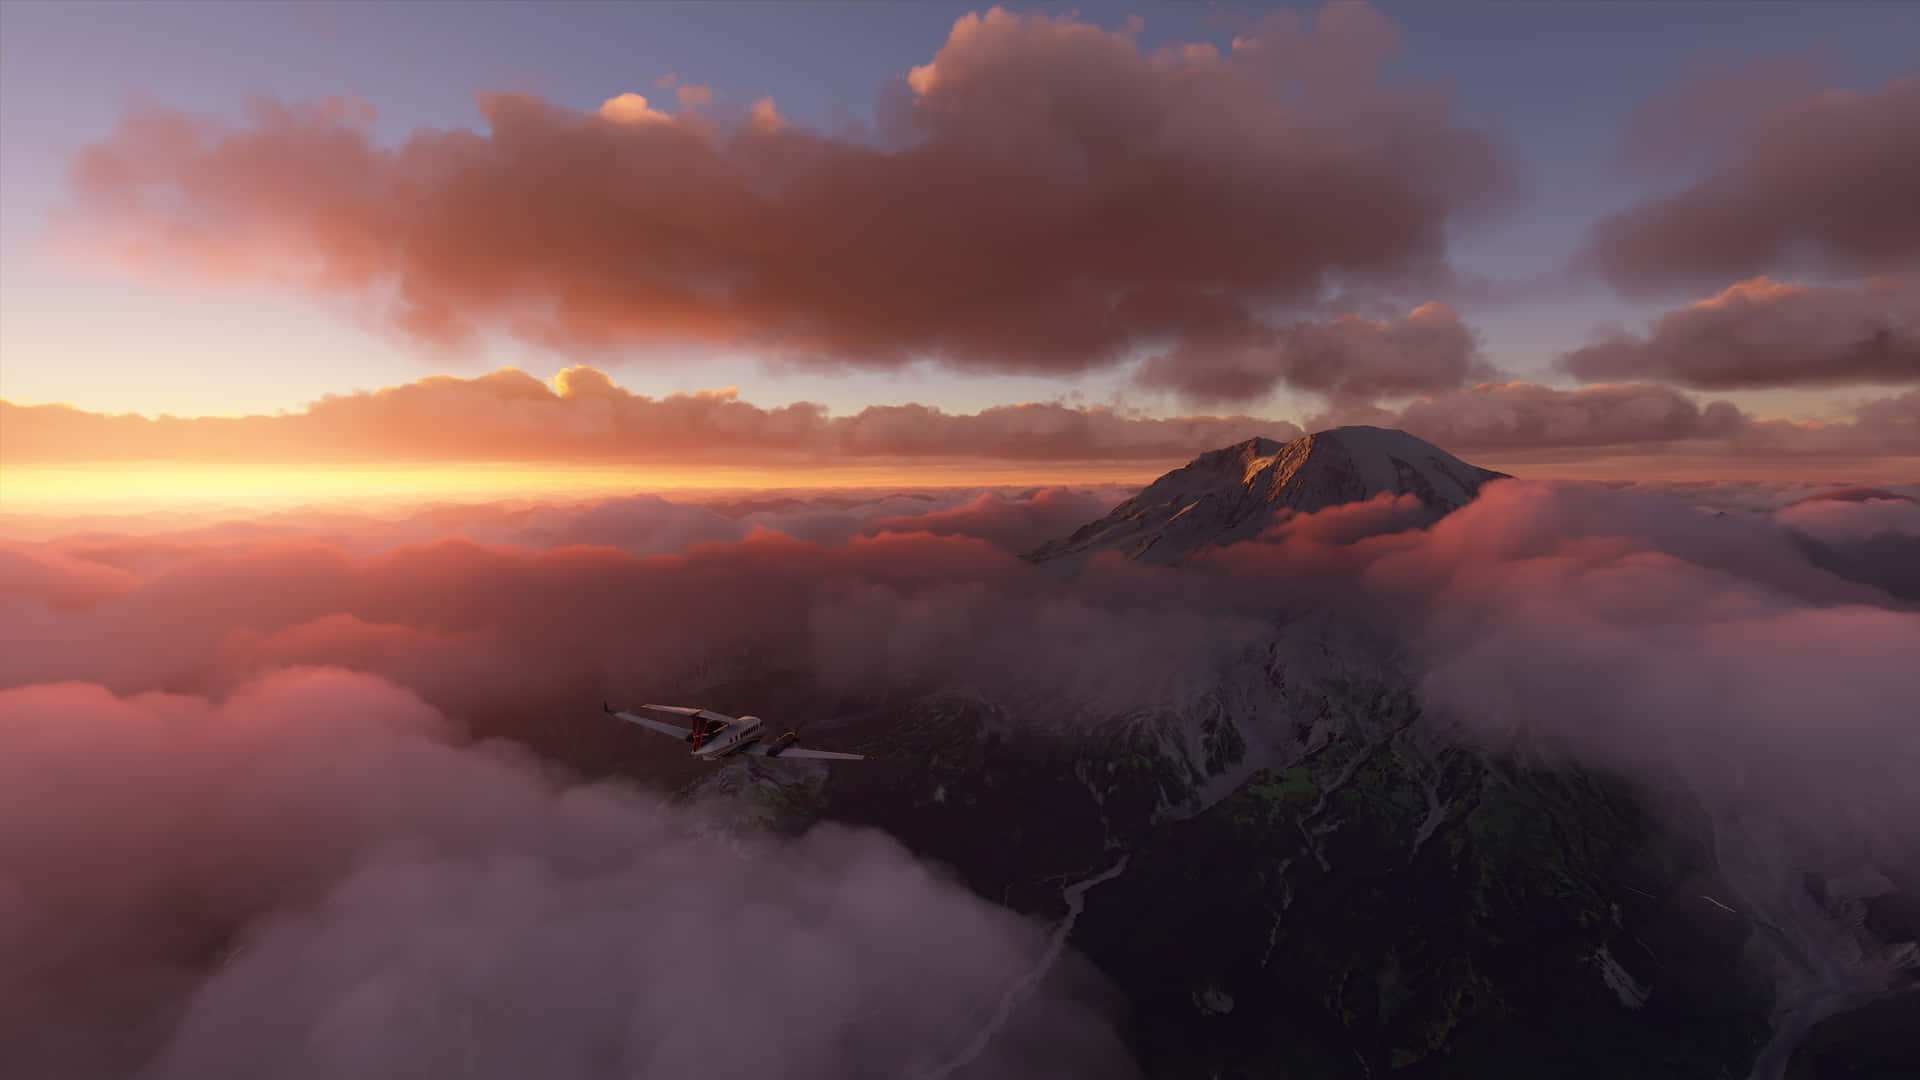 4ksfondo Di Microsoft Flight Simulator: Aereo Che Vola Verso Una Montagna.